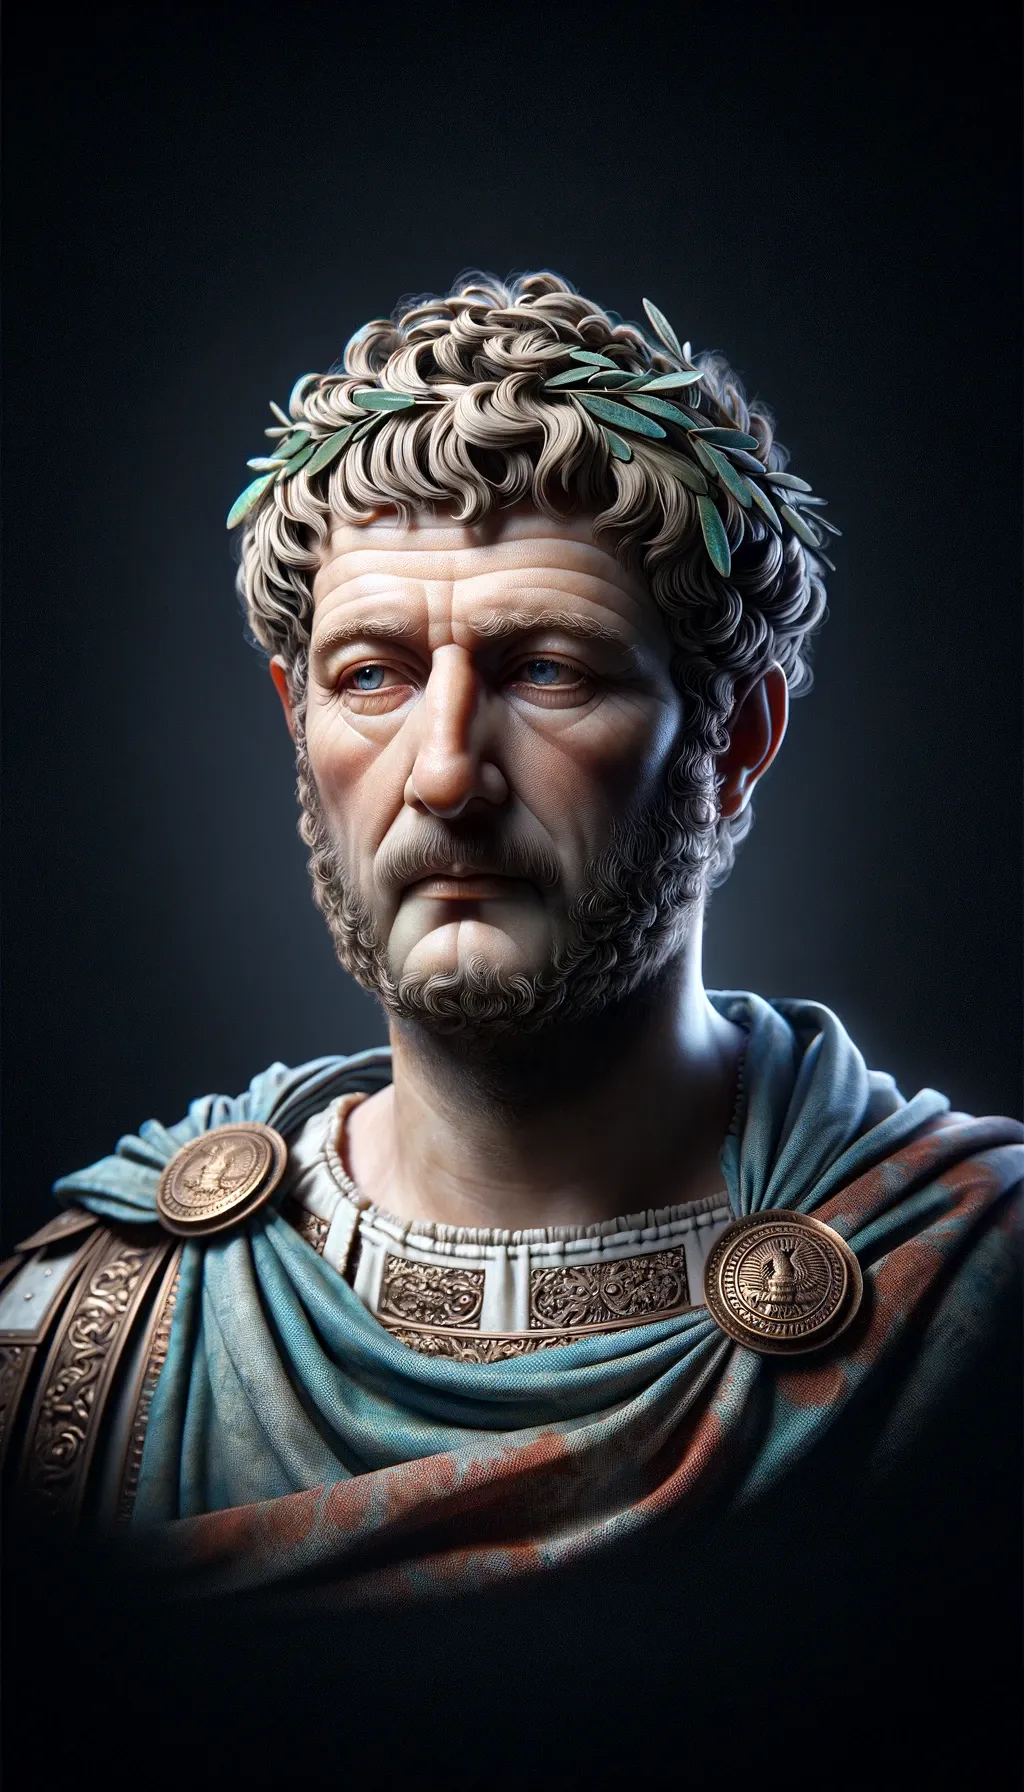 A portrait of Emperor Hadrian